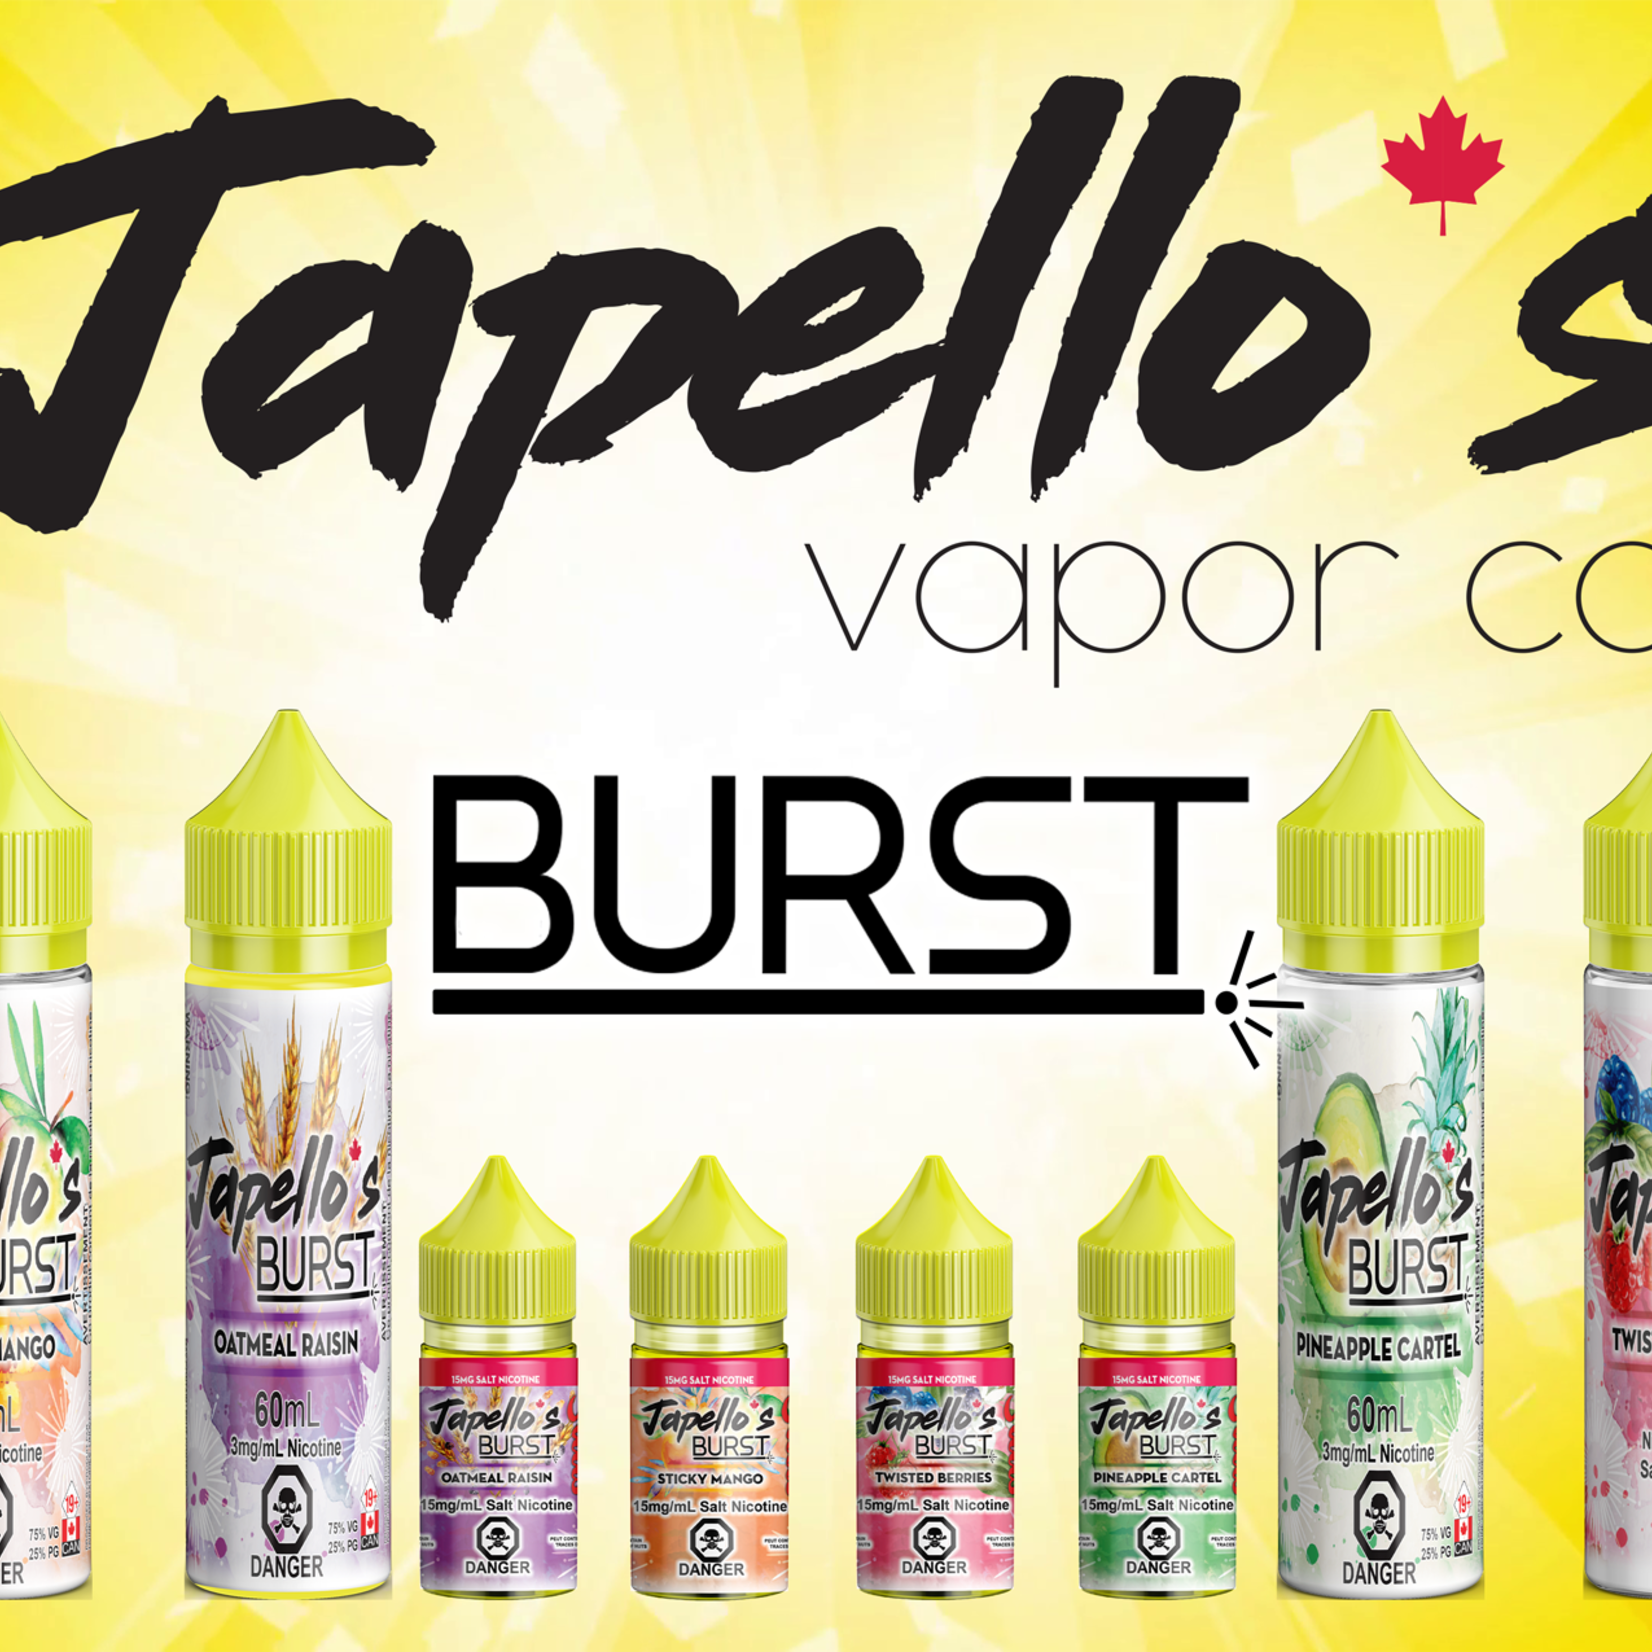 Japello's Burst